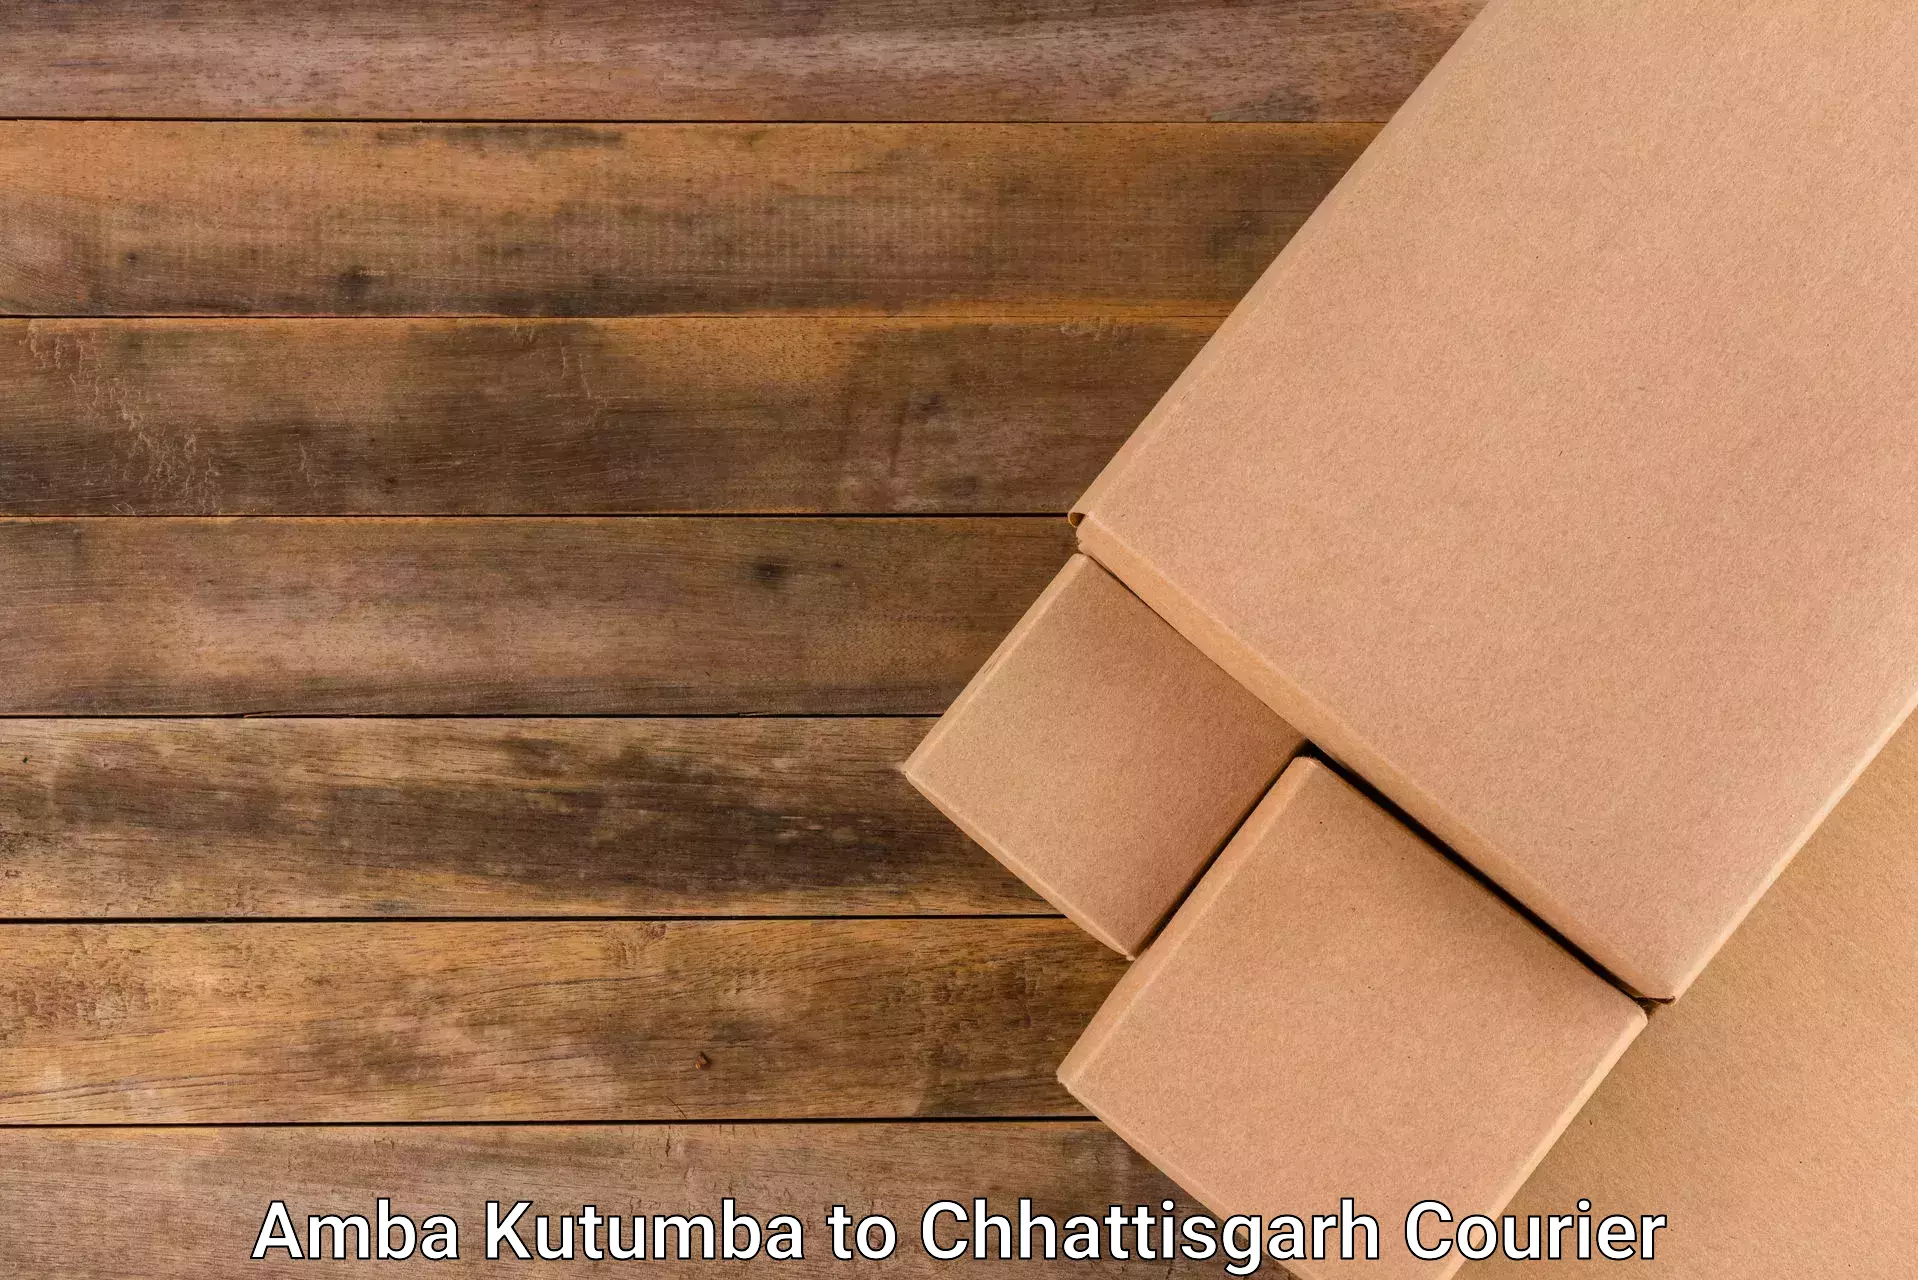 International courier networks Amba Kutumba to Korea Chhattisgarh